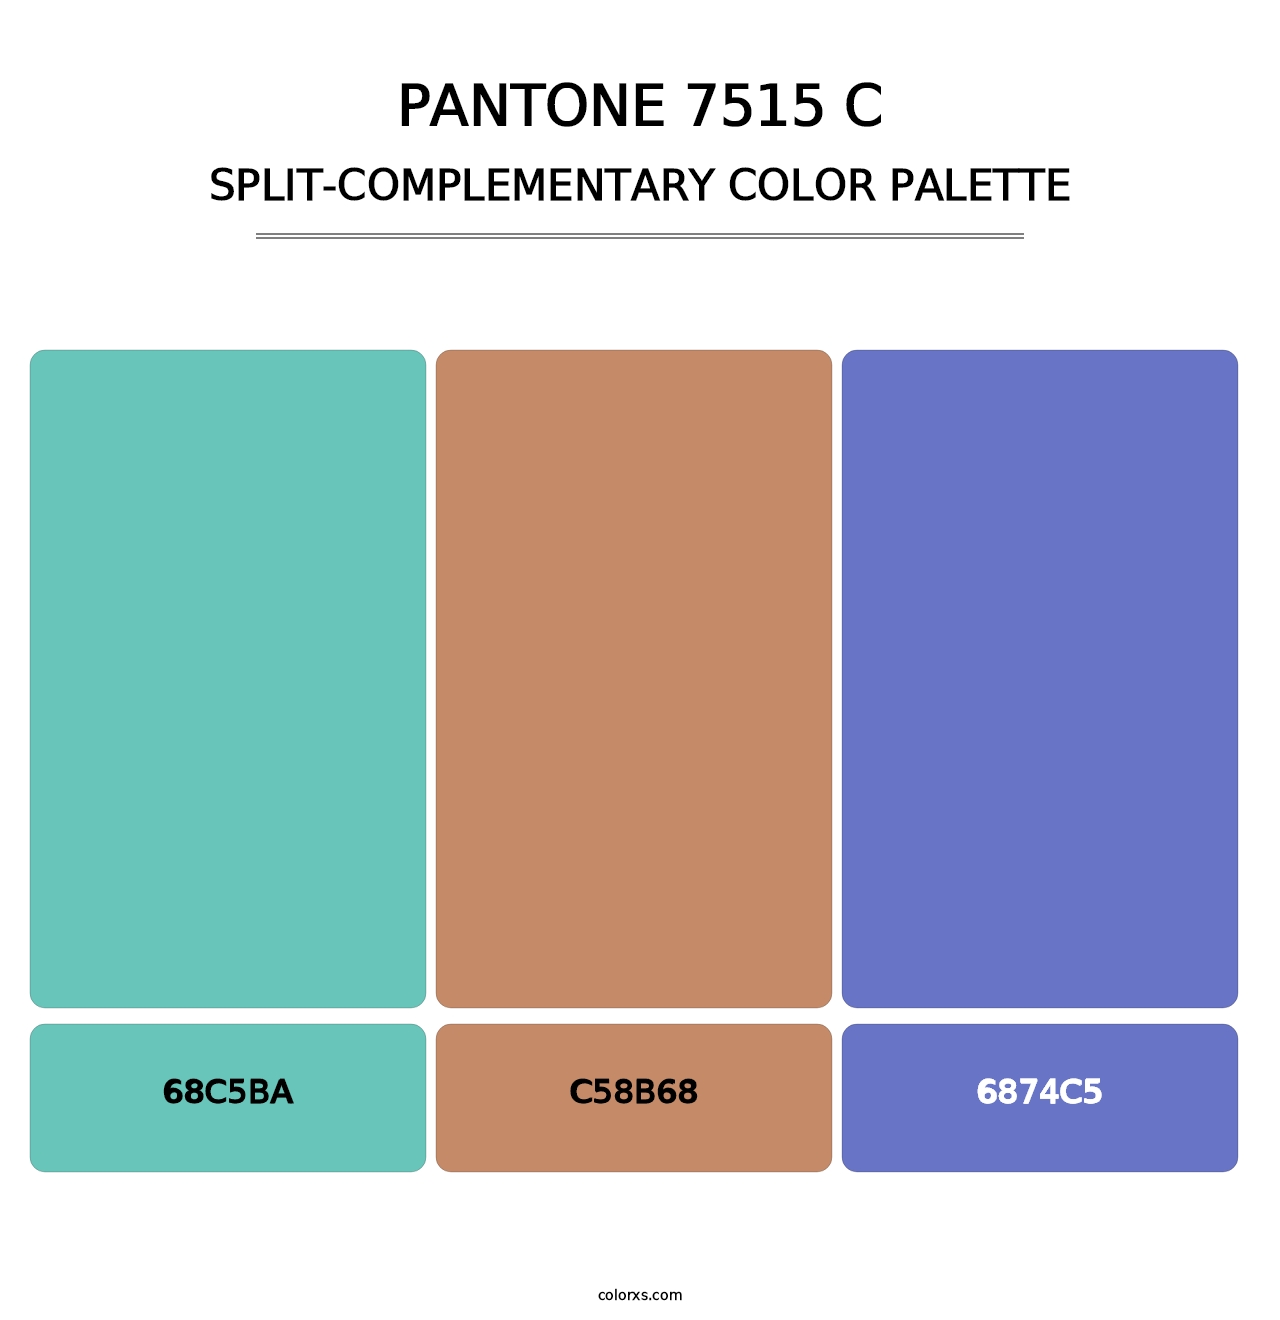 PANTONE 7515 C - Split-Complementary Color Palette